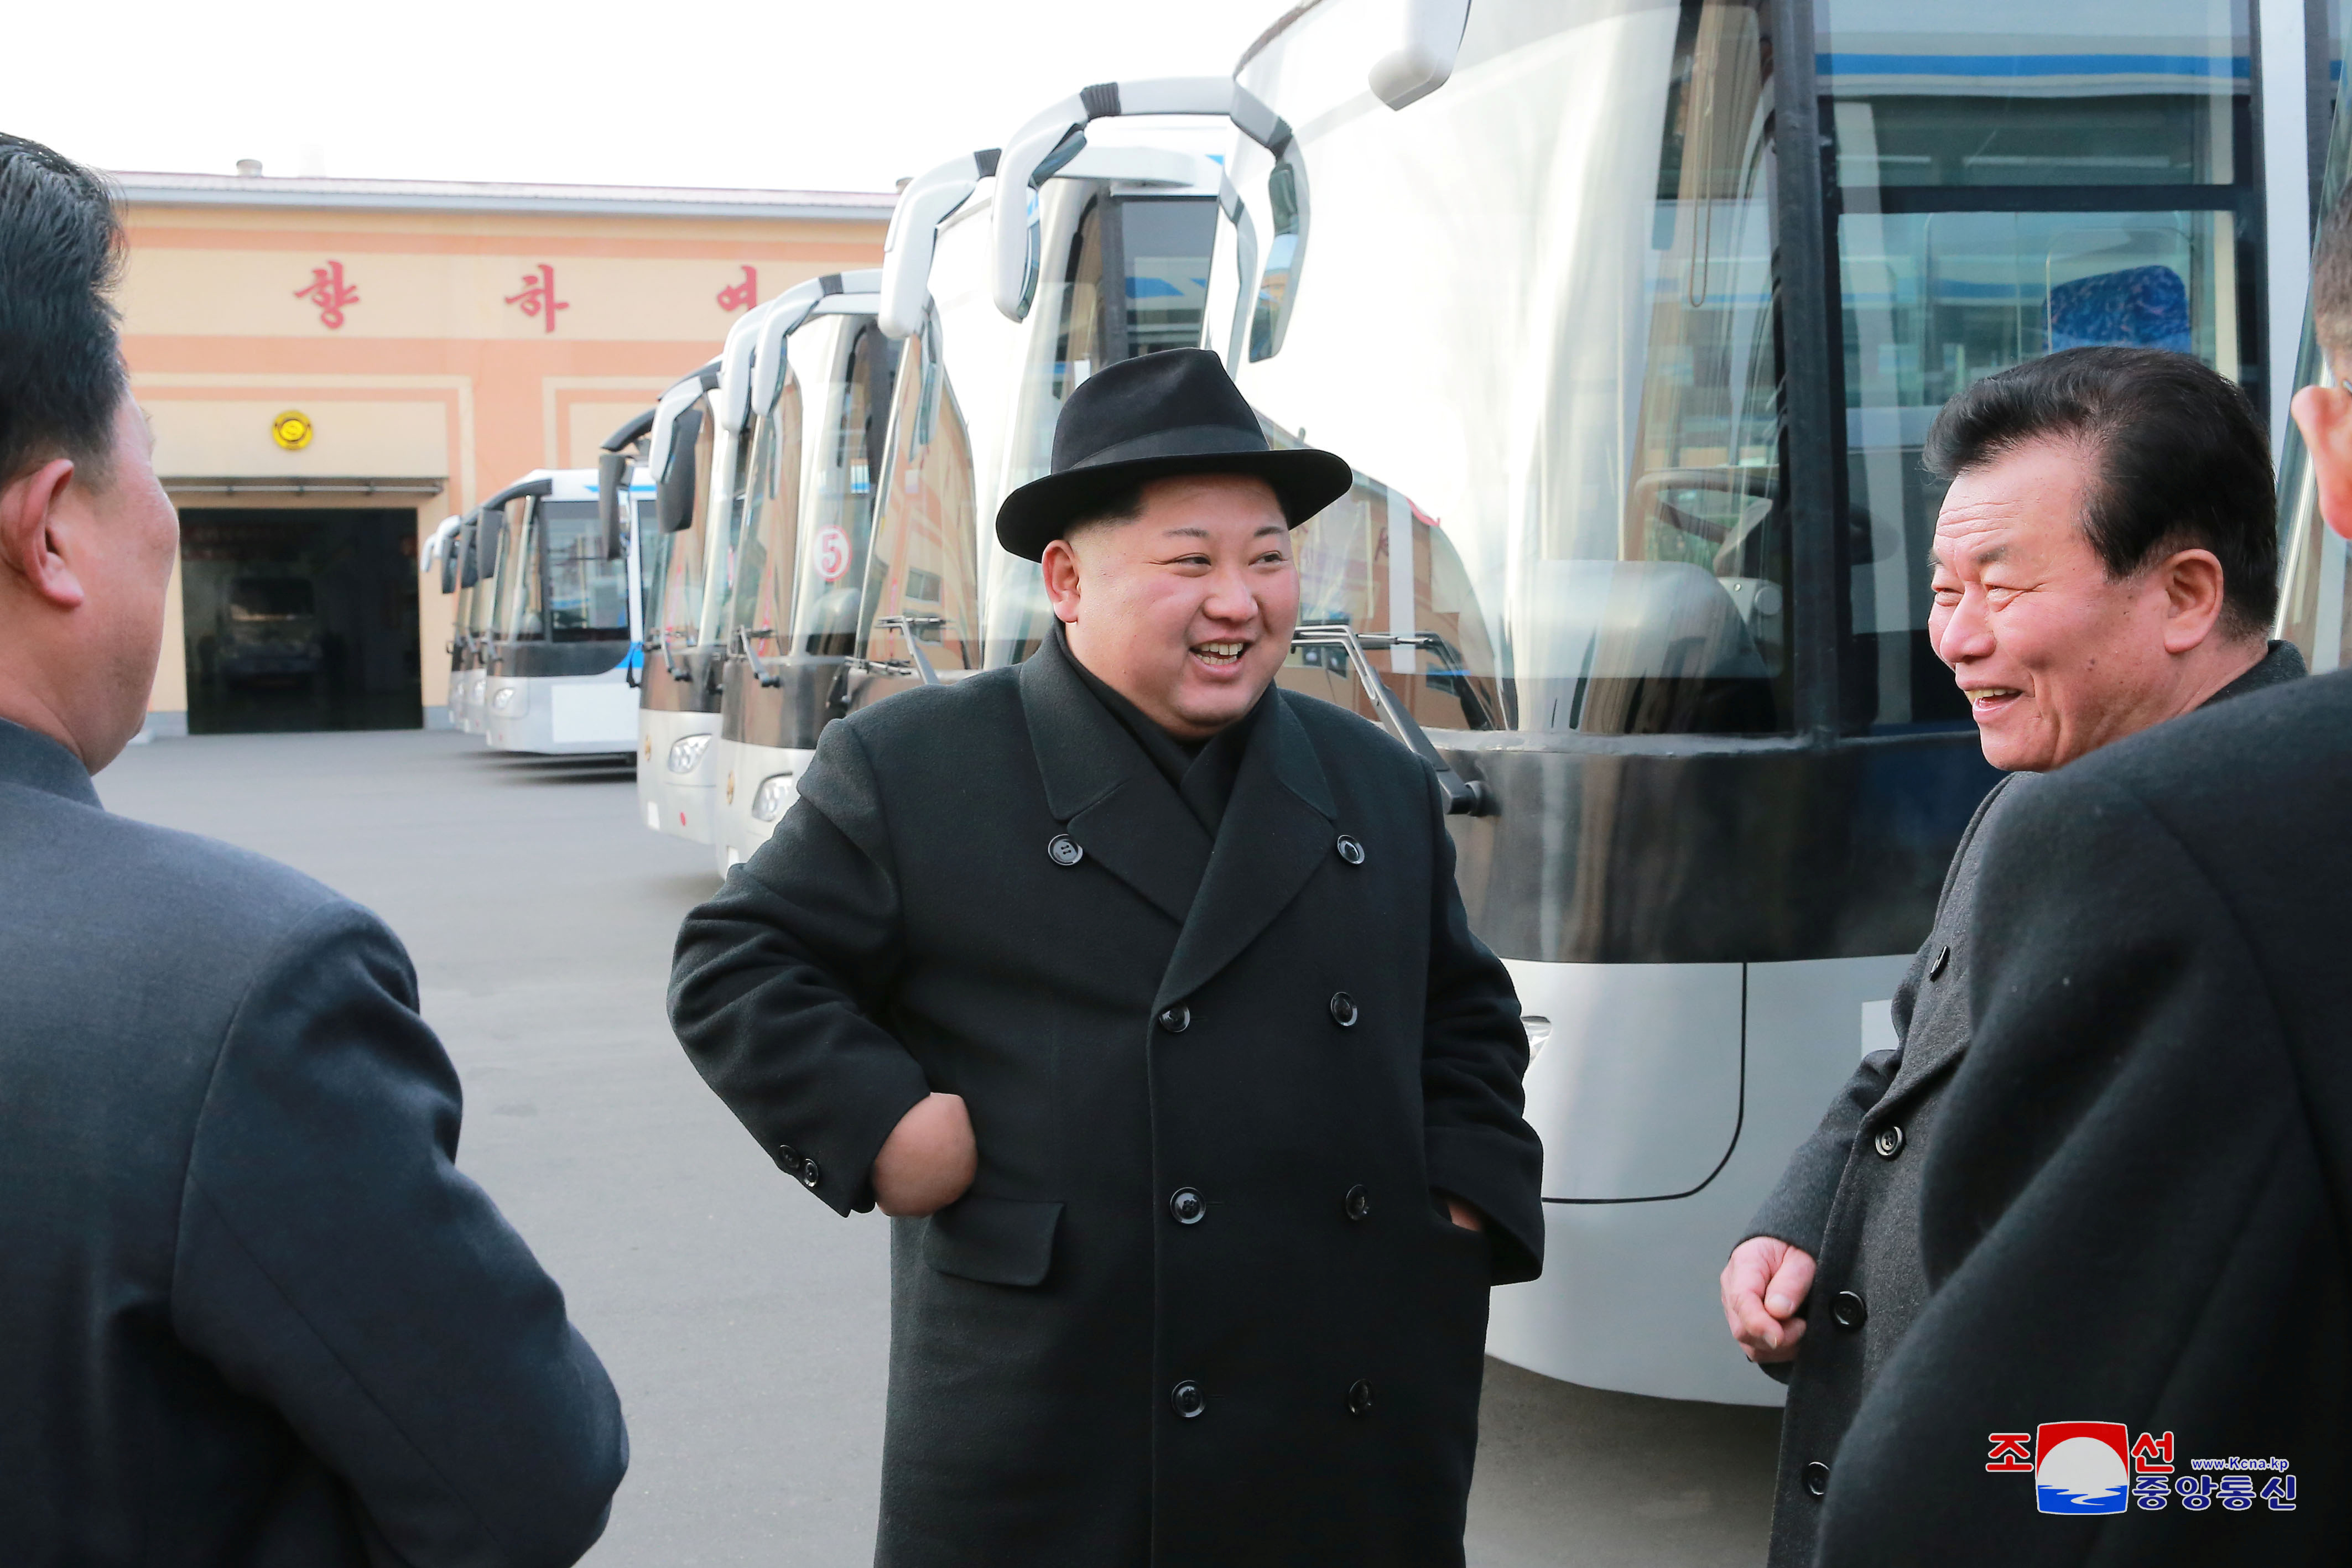 زعيم كوريا الشمالية داخل مصنع انشاء الحافلات